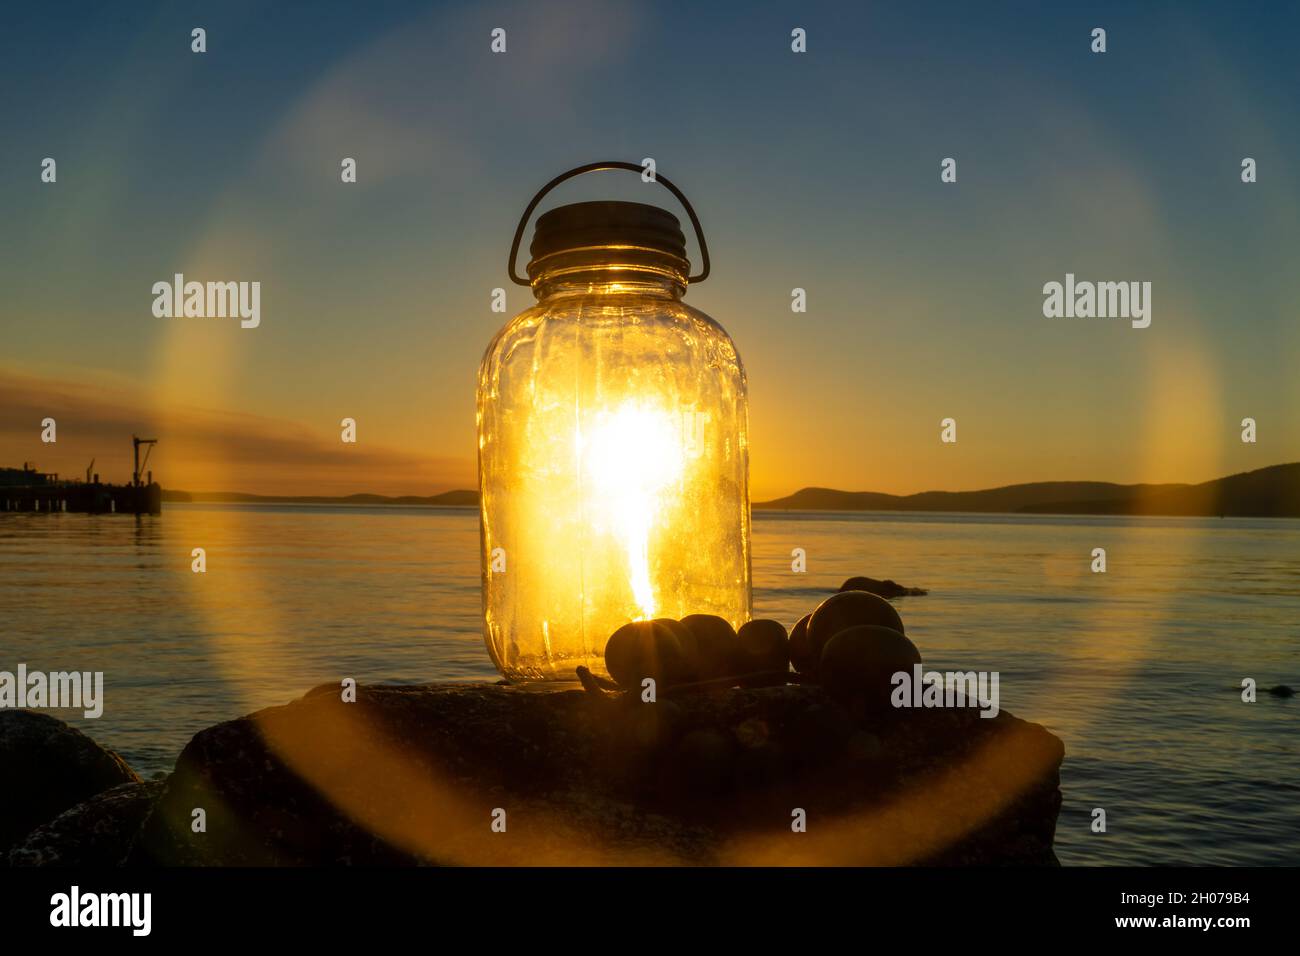 Lanterne en verre rétro illuminée depuis le coucher du soleil Banque D'Images